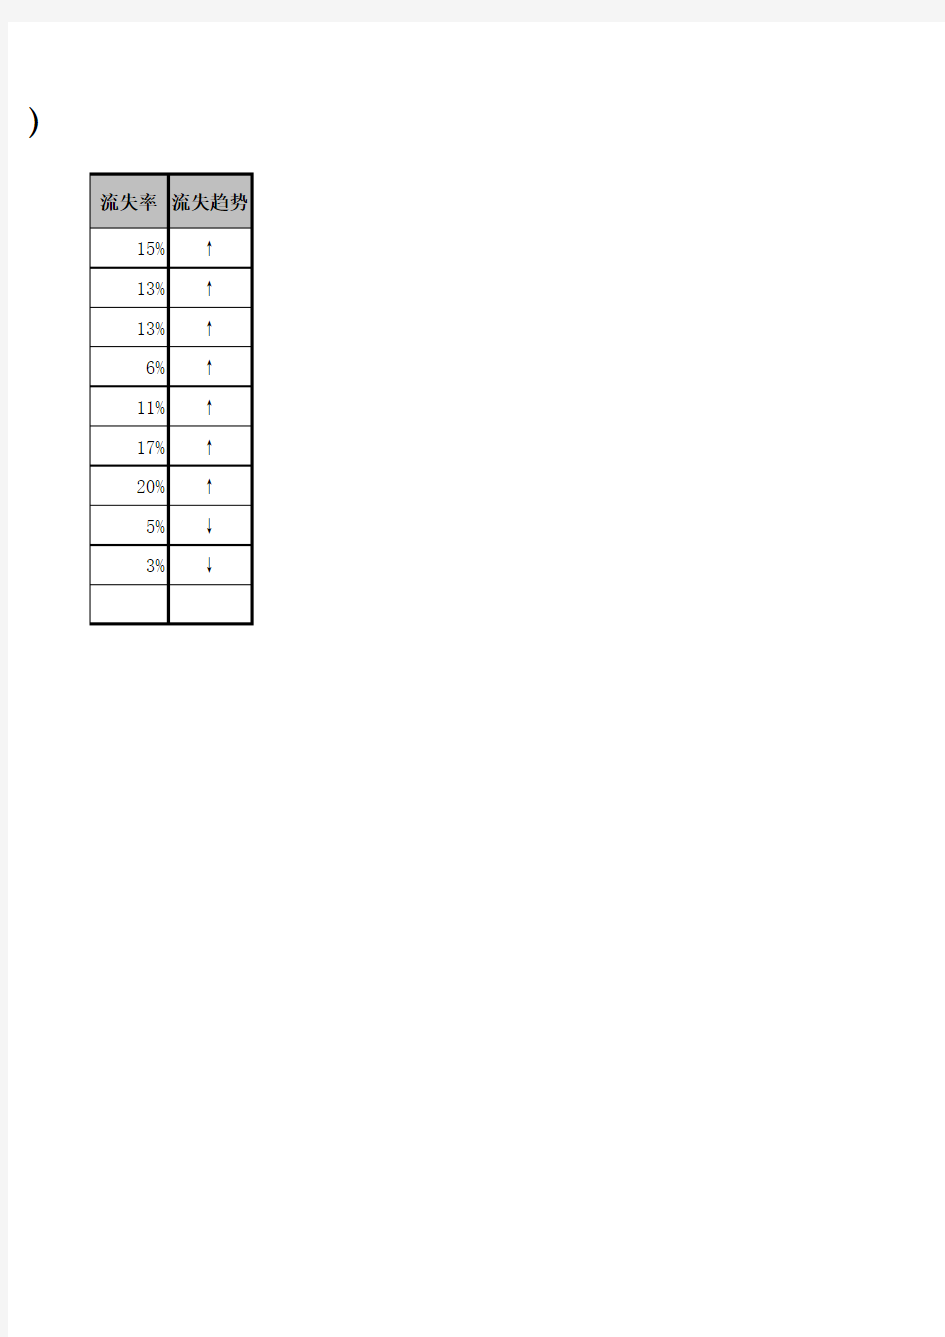 [Excel表格]各部门人员流失率统计表